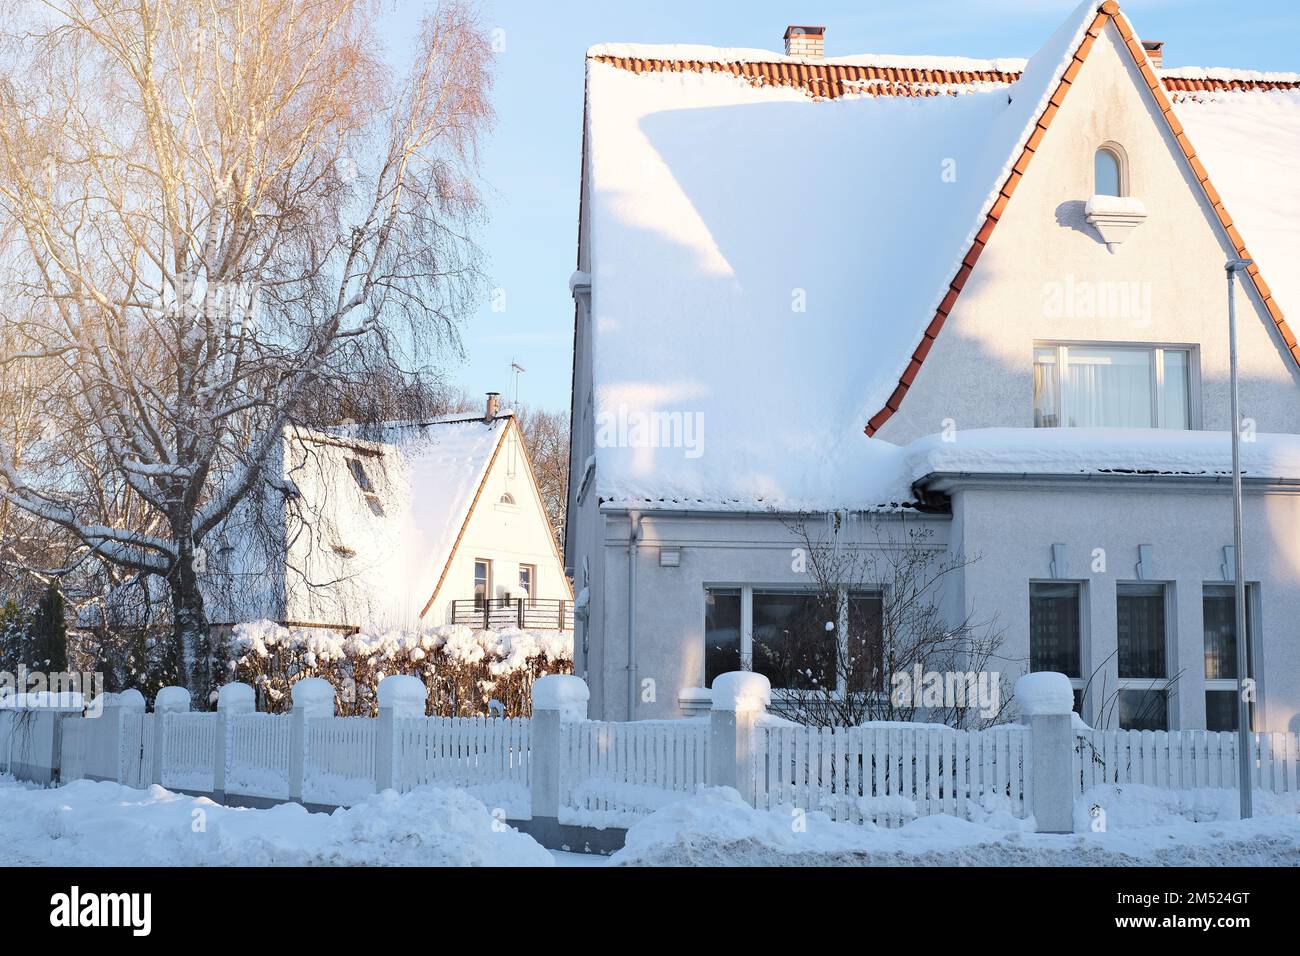 Paesaggio fiabesco invernale sulla strada con case con un tetto triangolare e strade ricoperte di molta neve Foto Stock